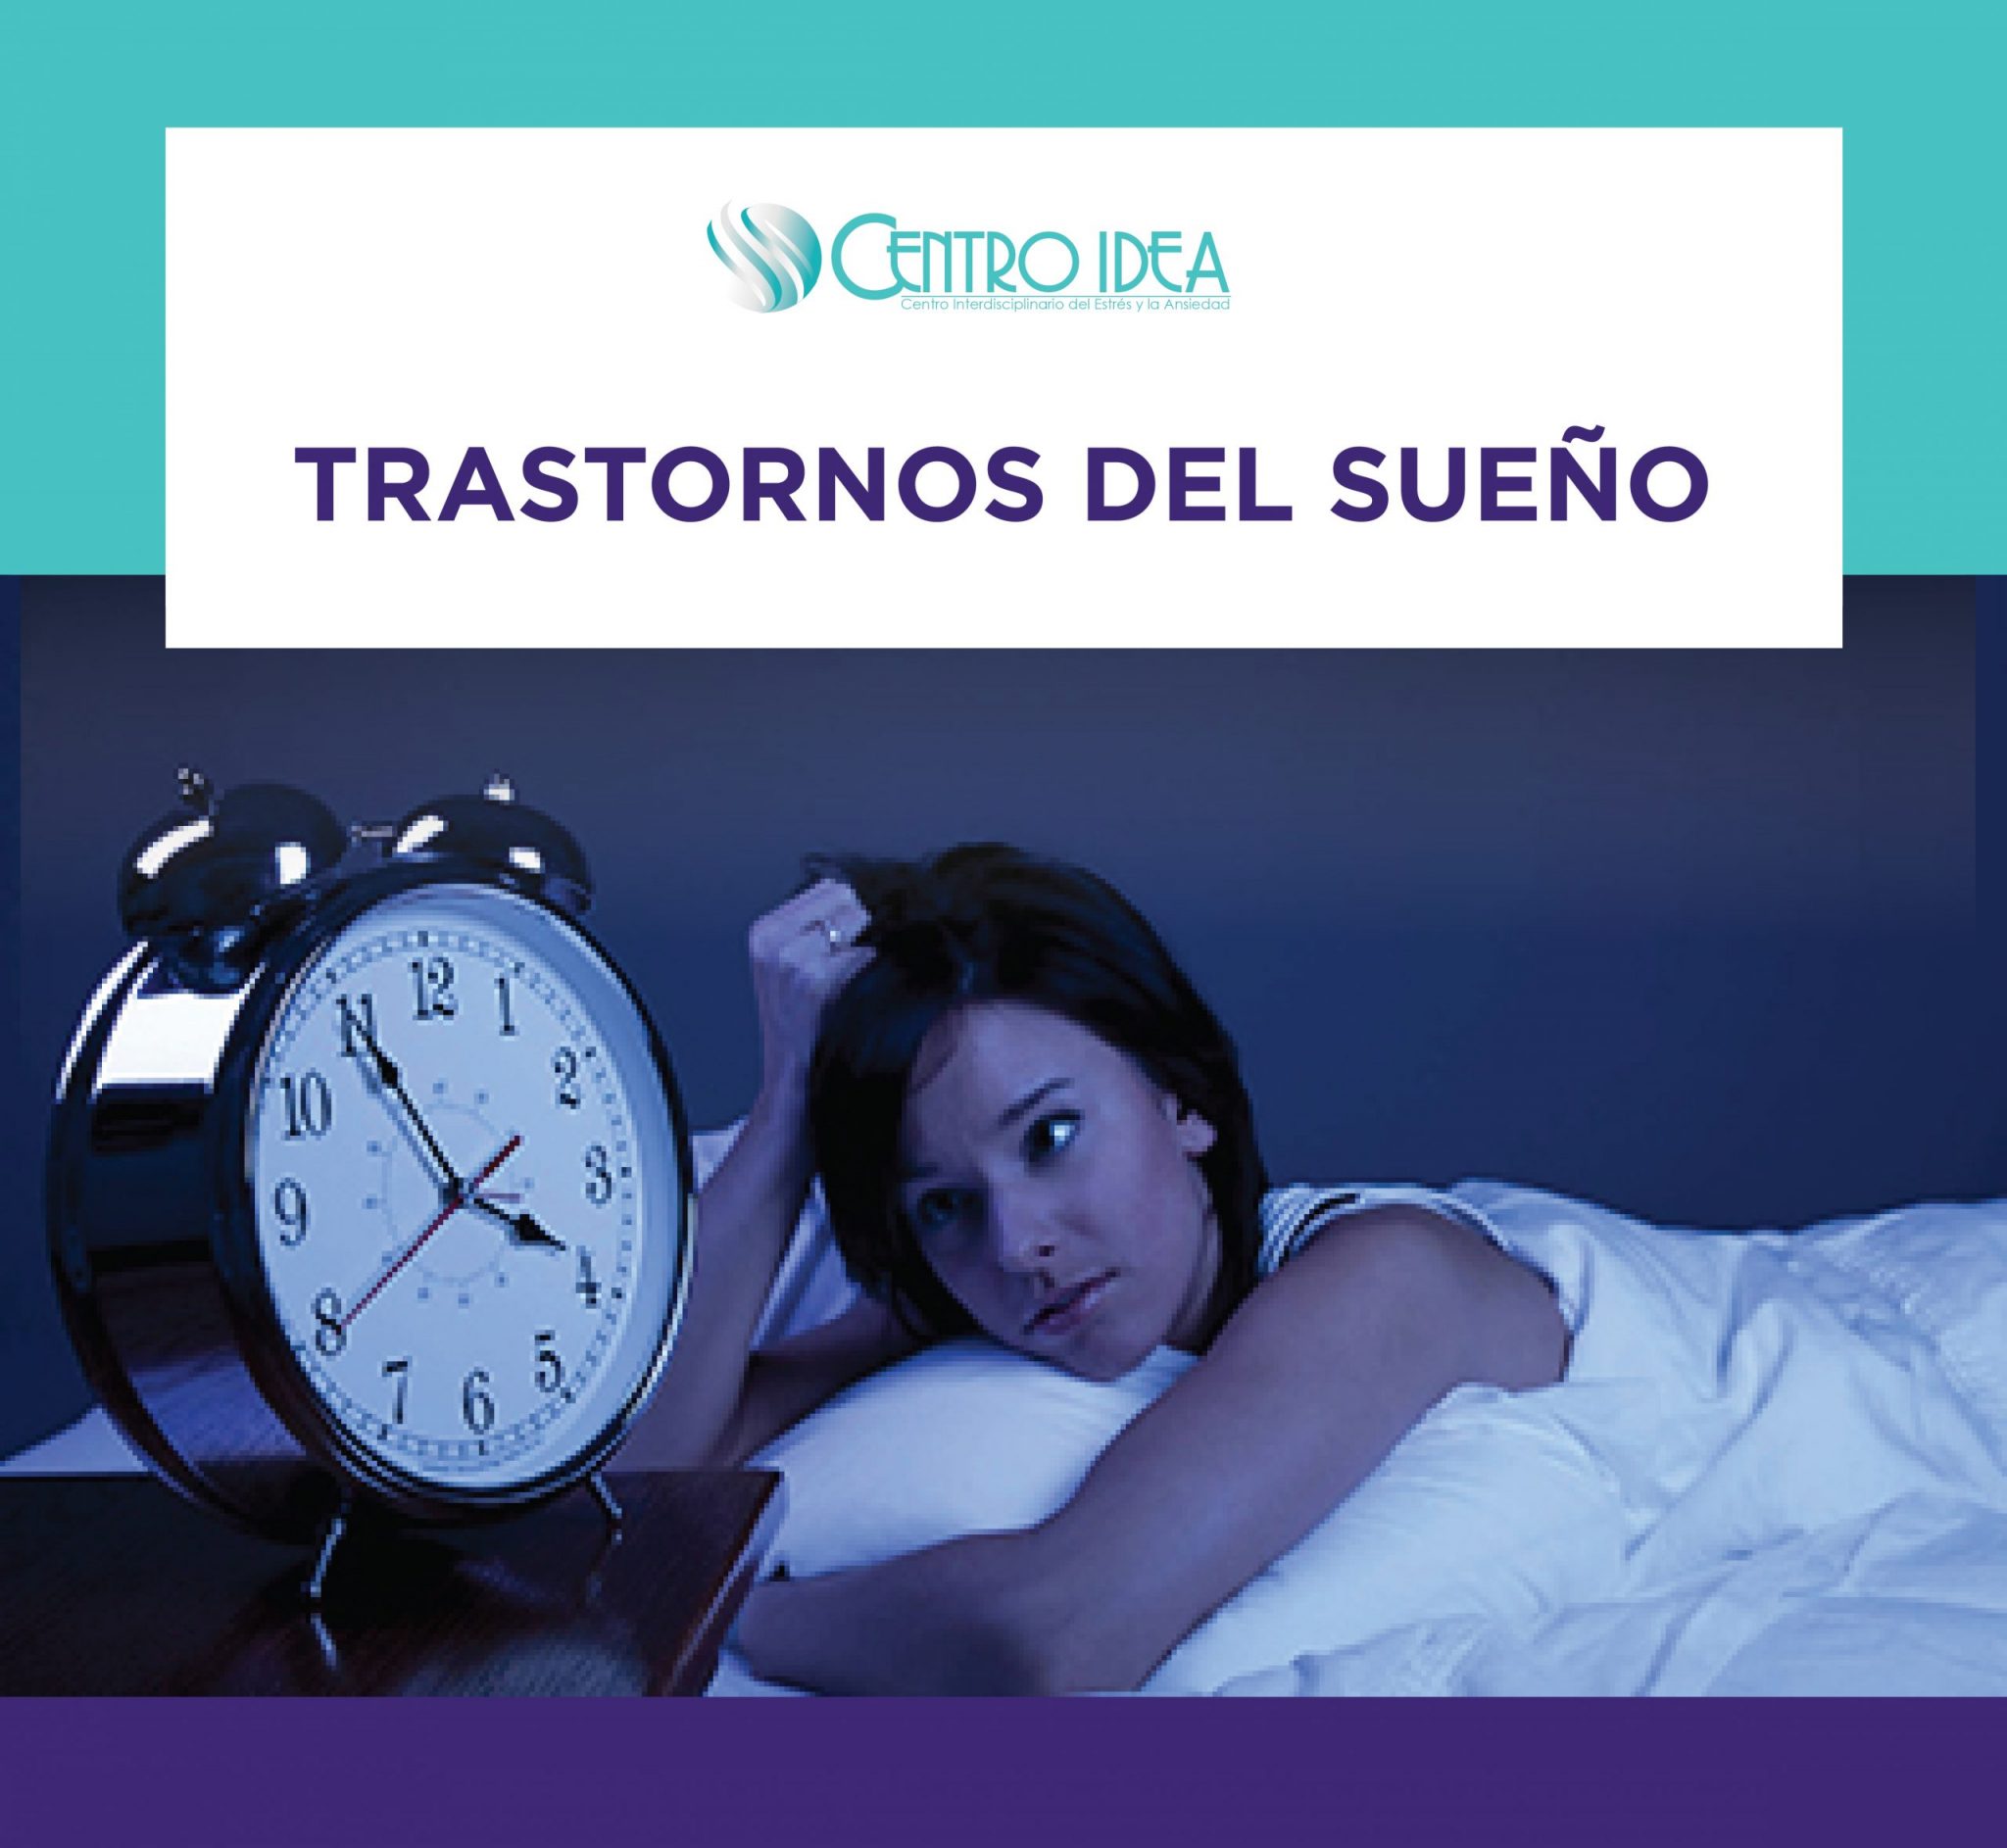 Trastornos del sueño: Disomnias y parasomnias.